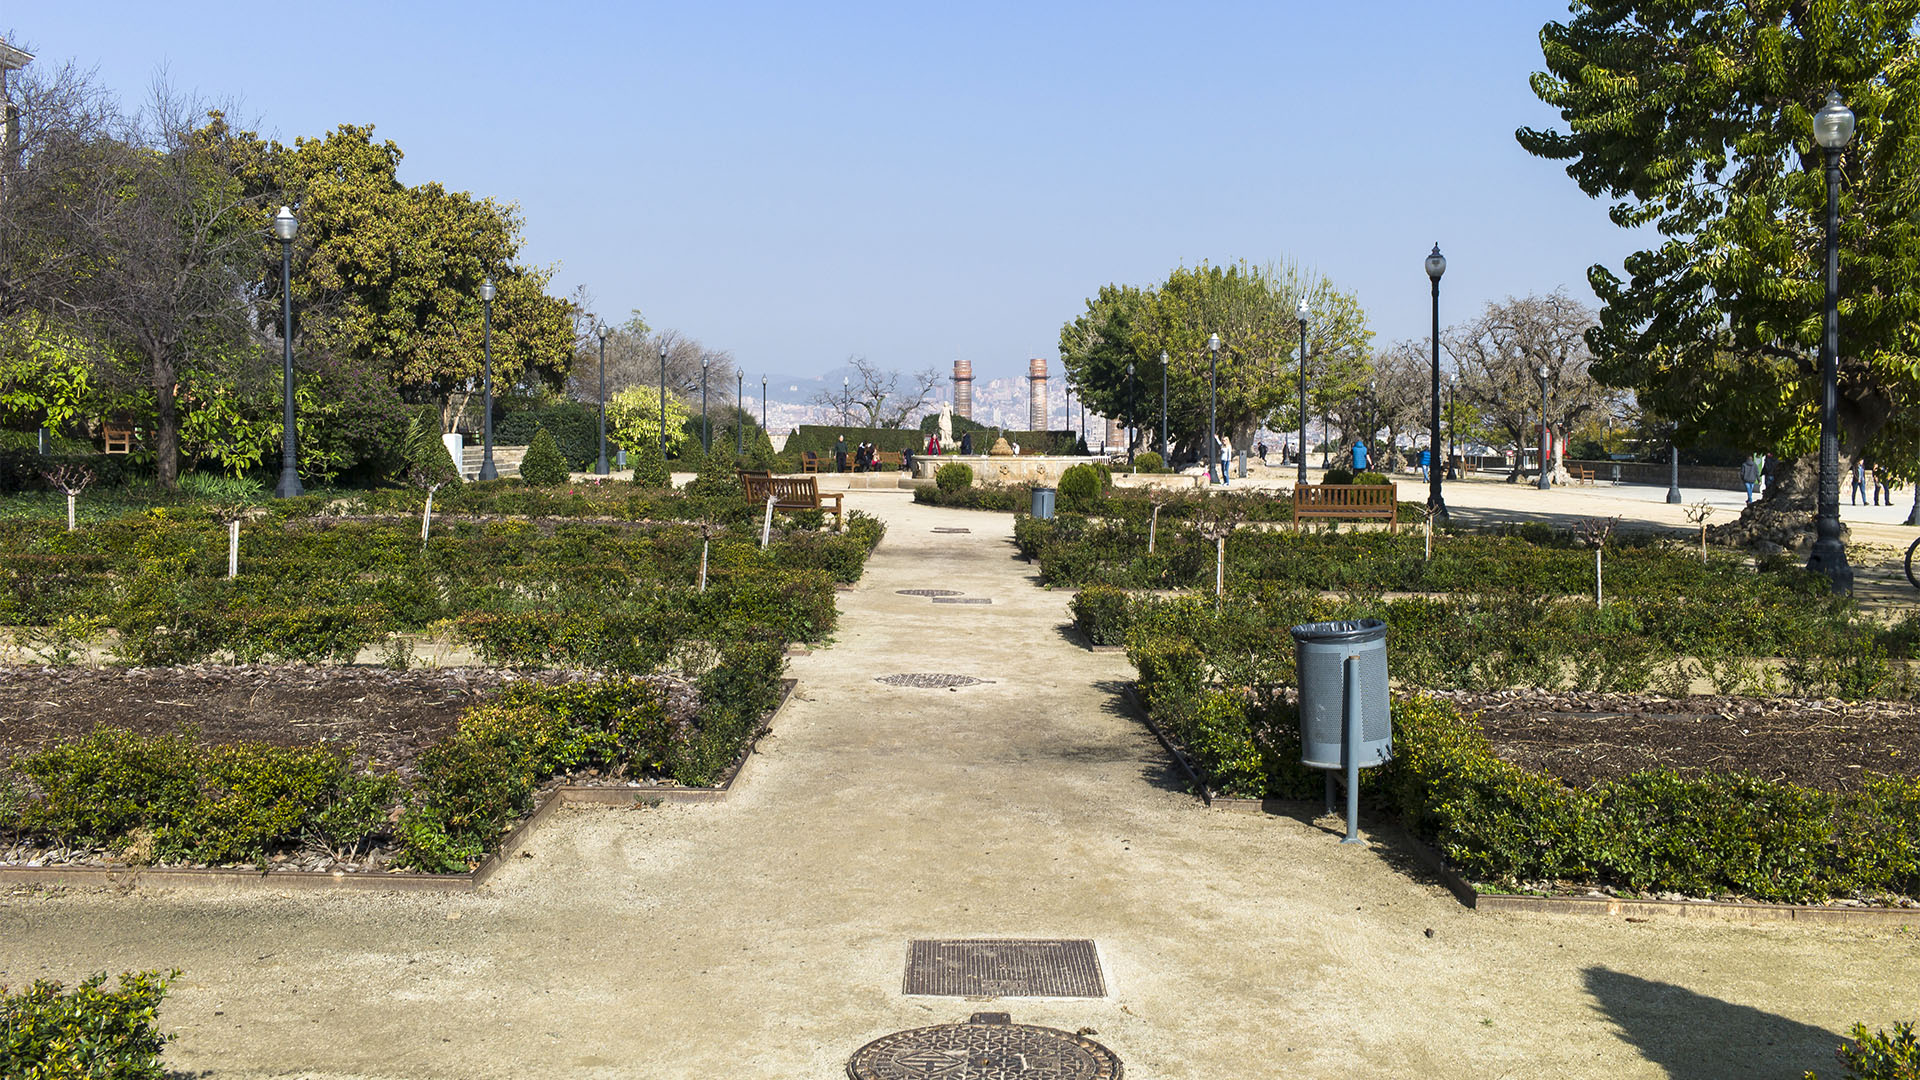 Der Mirador und Park Parque del Mirador del Poble-sec mit herrlicher AUssicht über Barcelona.